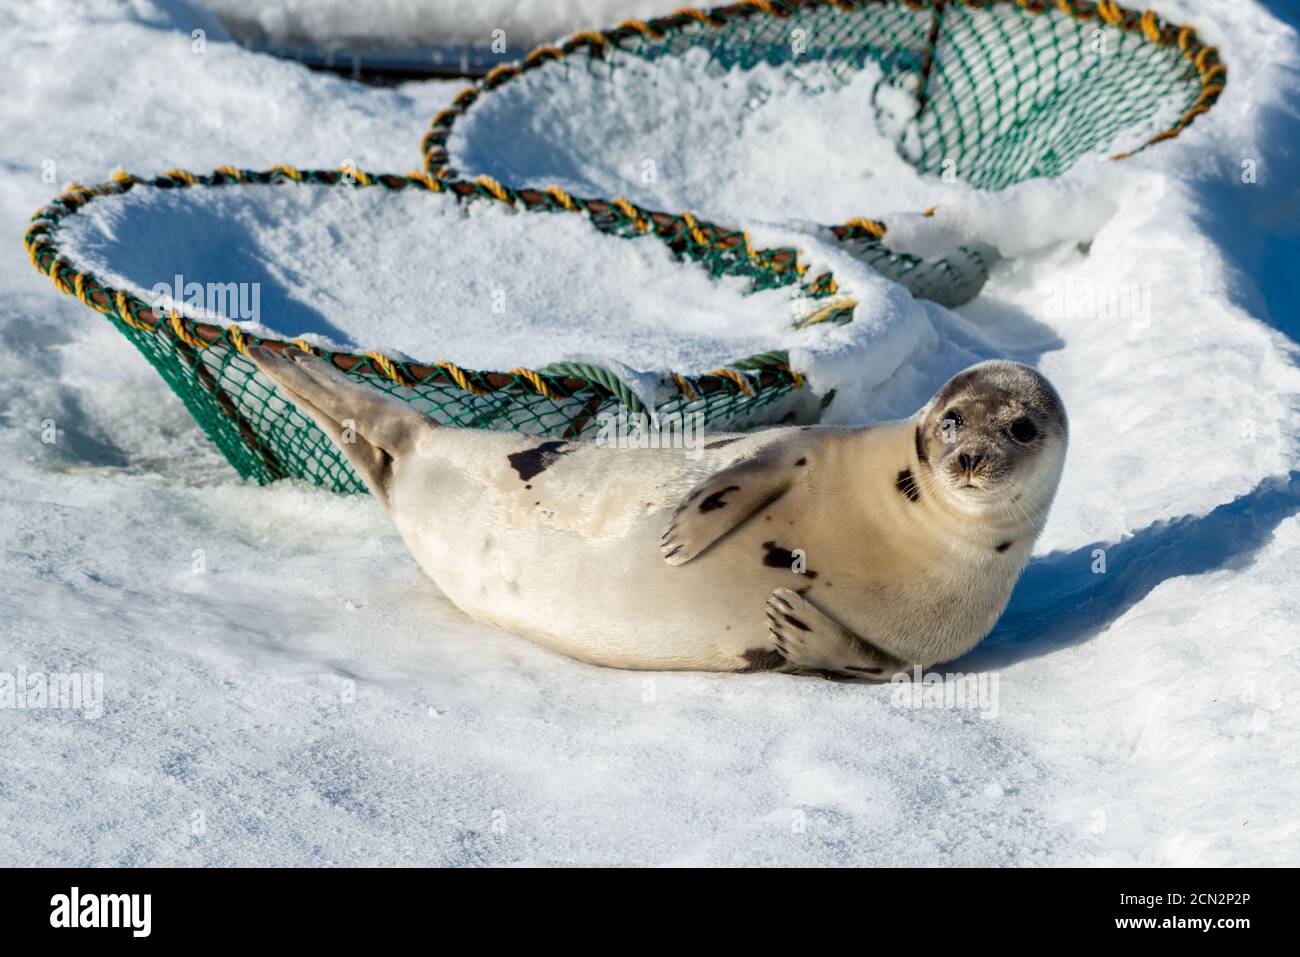 Una grande foca di arpa selvaggia che si stese su un letto di ghiaccio e neve. La pelliccia grigio-argento con macchie scure o segni a forma di arpa è lucida e spessa. Foto Stock